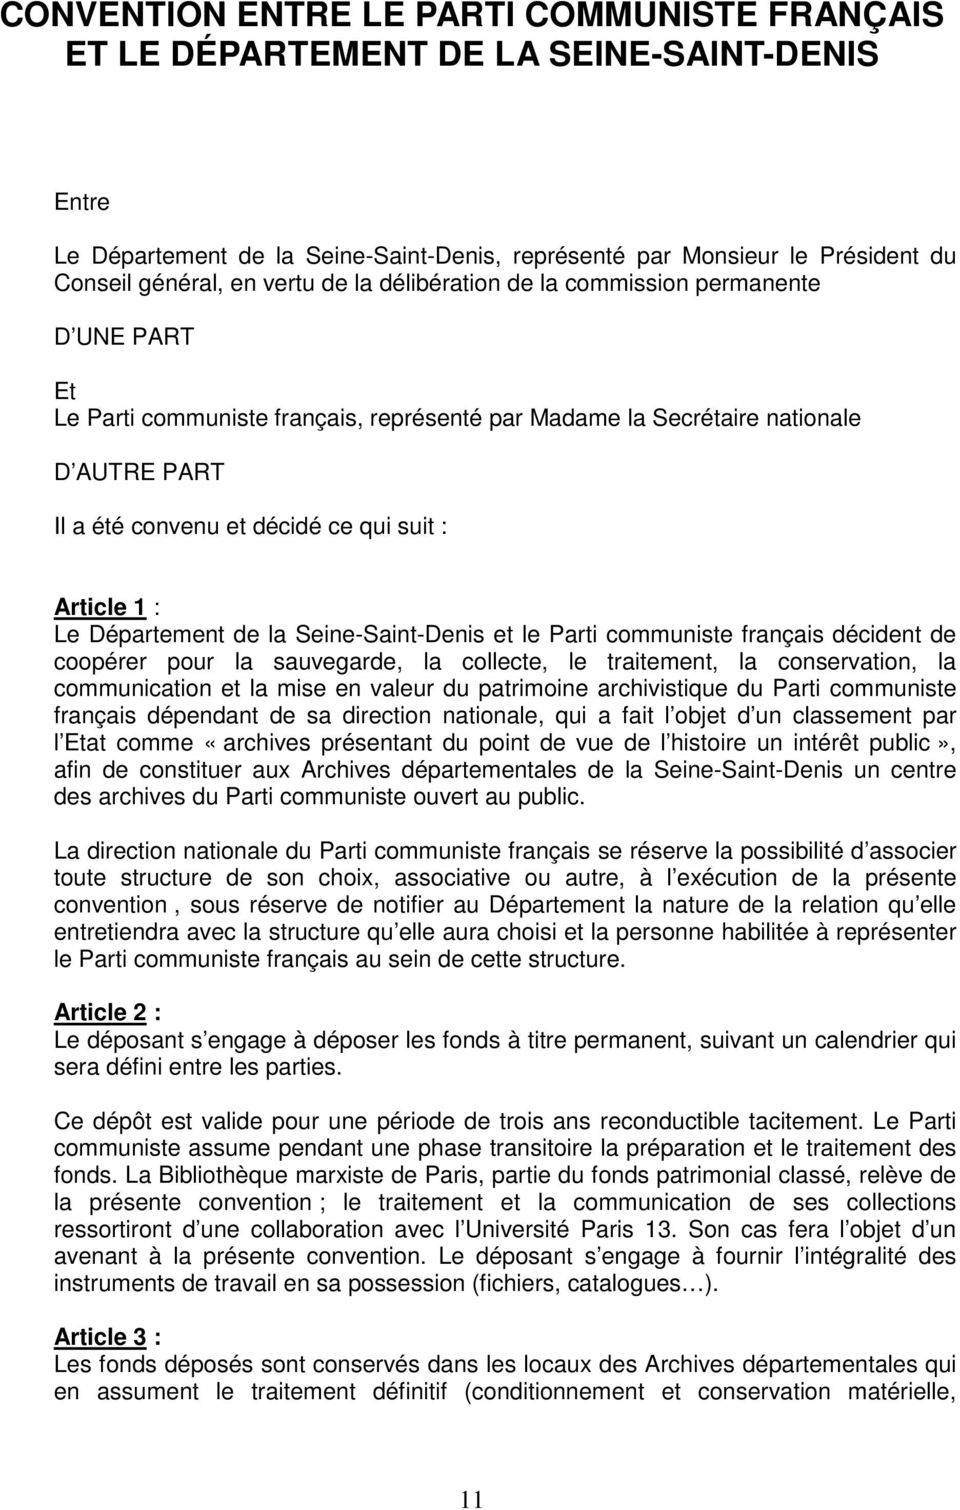 1 : Le Département de la Seine-Saint-Denis et le Parti communiste français décident de coopérer pour la sauvegarde, la collecte, le traitement, la conservation, la communication et la mise en valeur